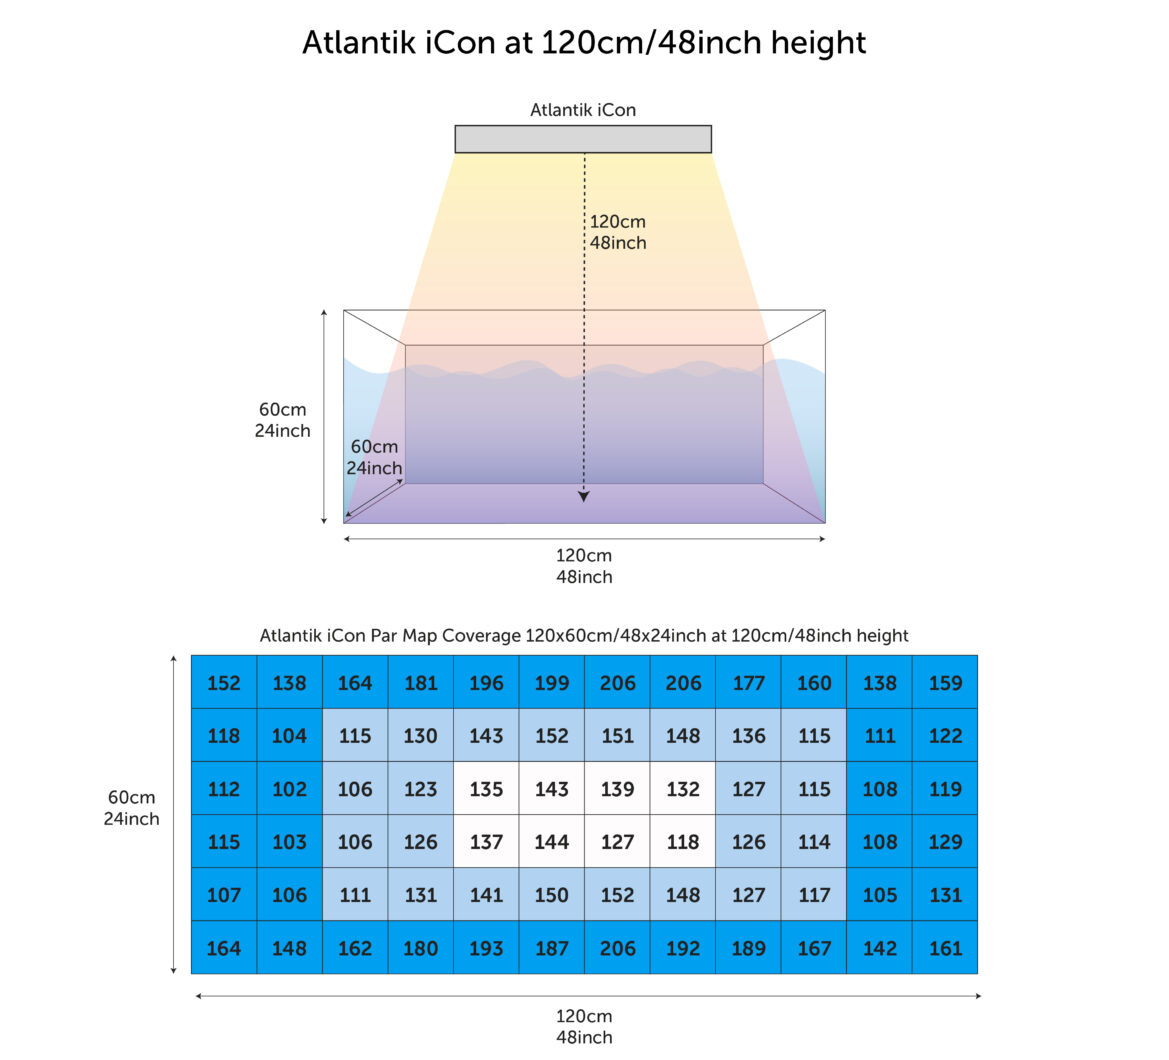 Atlantik_iCon_PAR_odczyty_mierzone_od_120cm_zbiornika